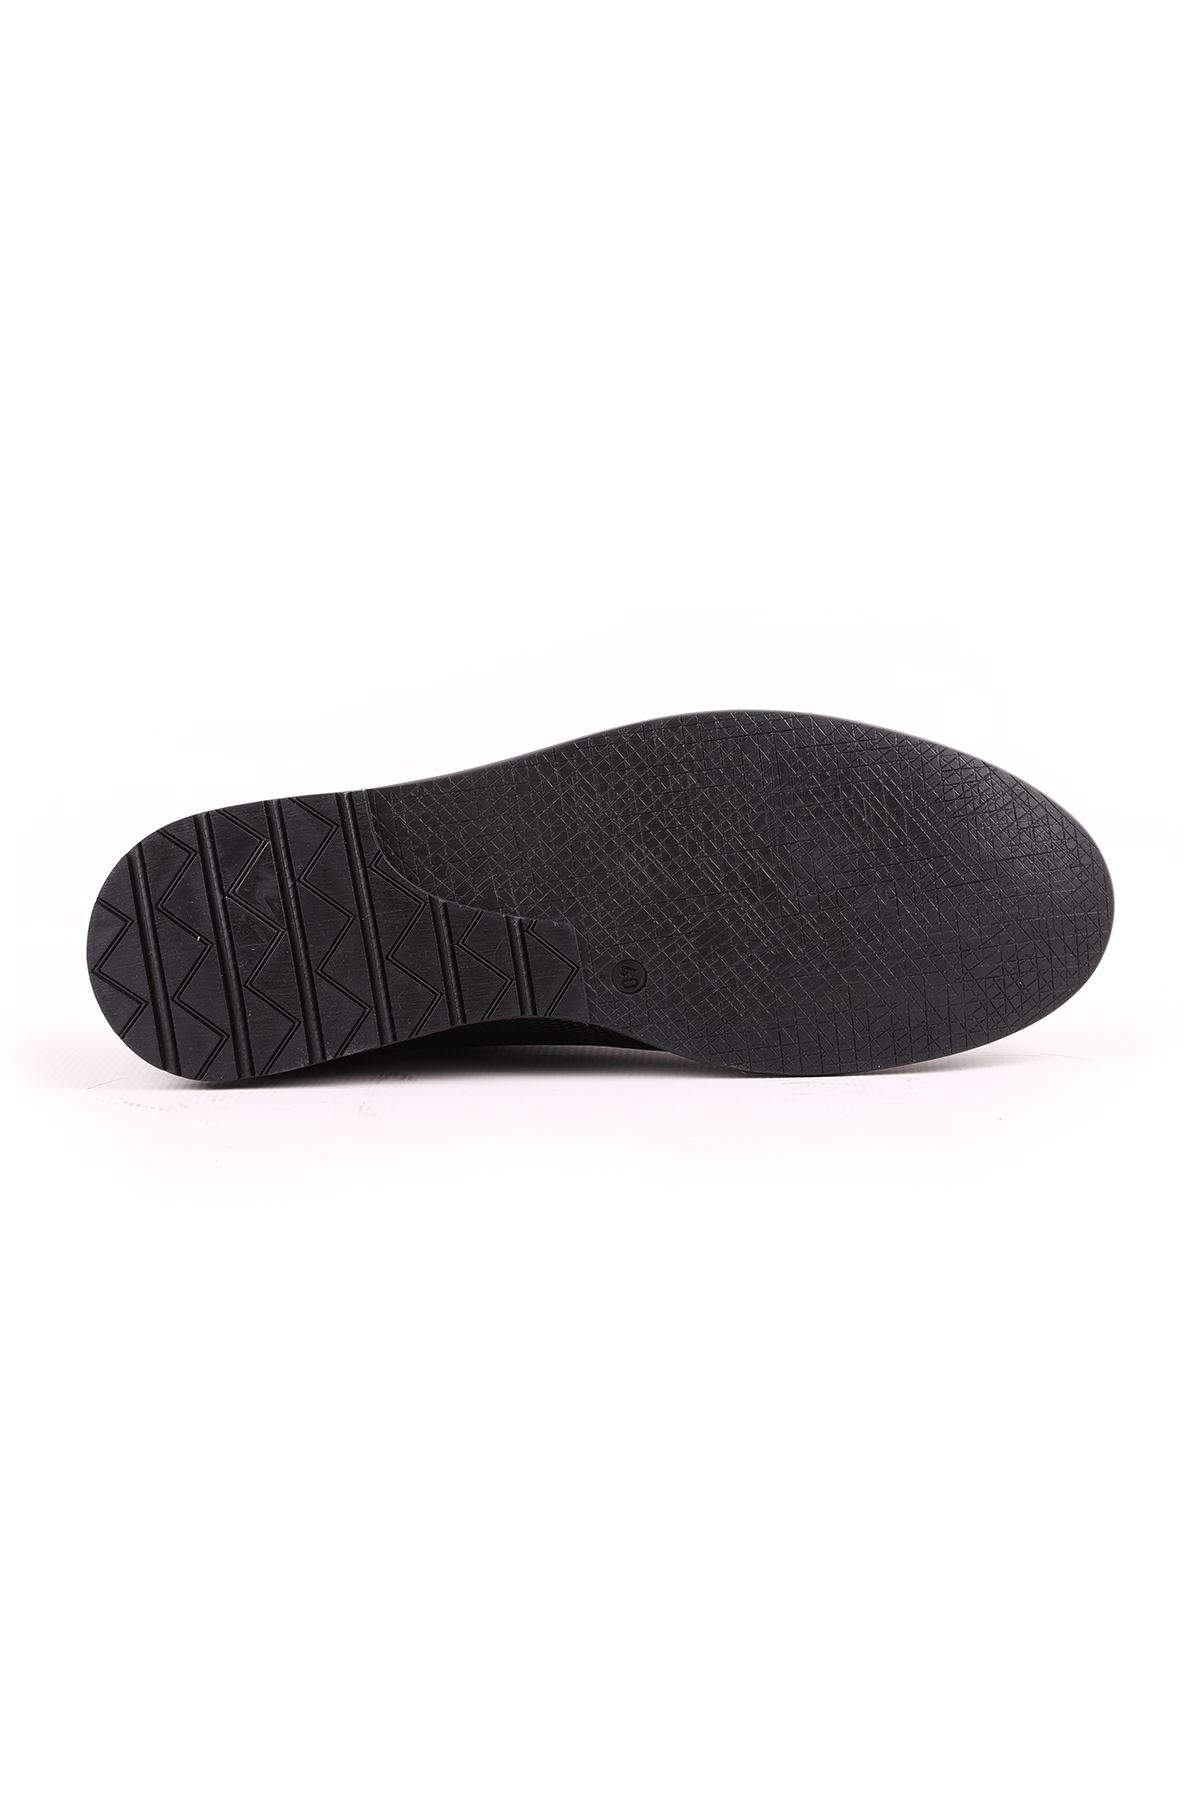 Libero L5089 Siyah Casual Erkek Ayakkabı 